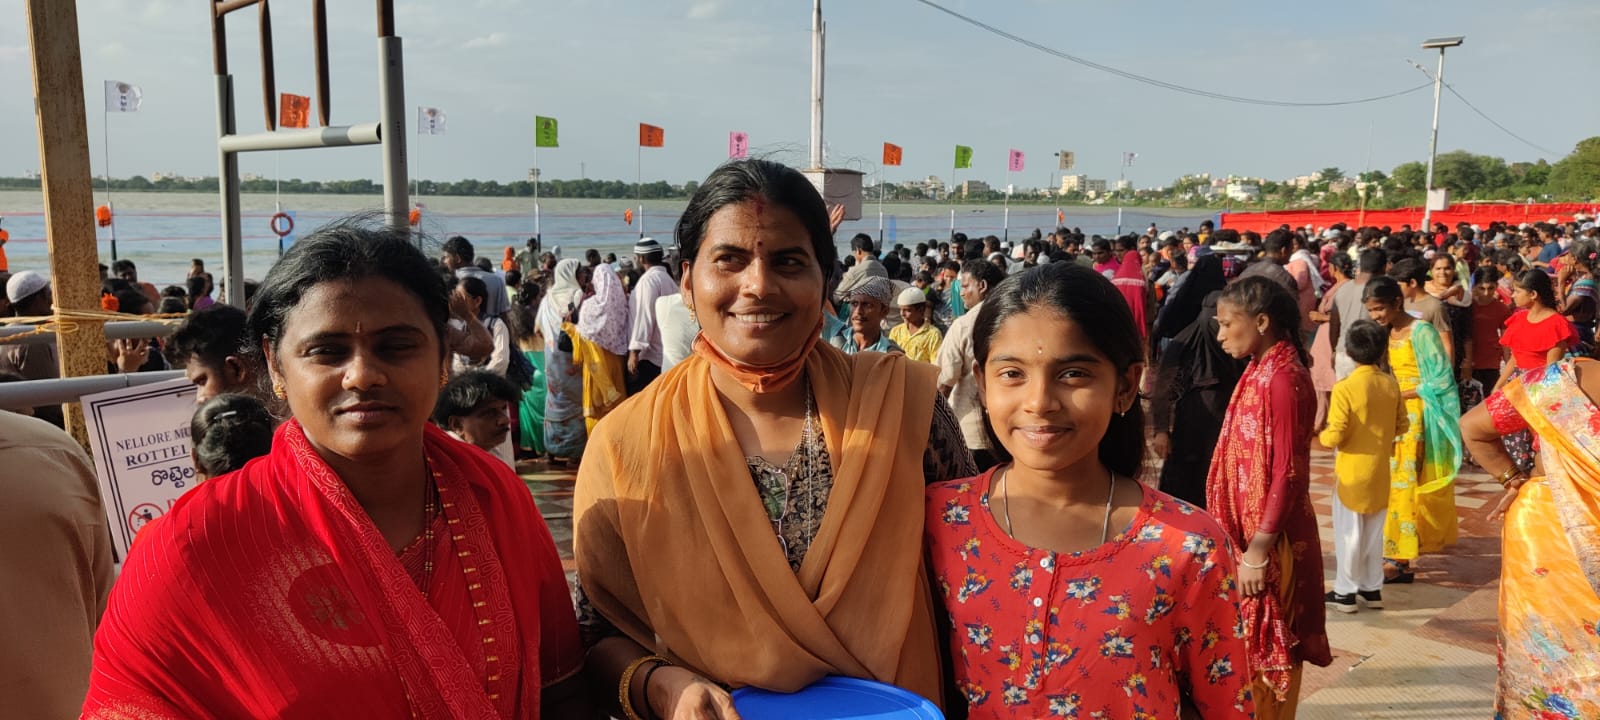 Attendees of Rottela Panduga at the Bara Shaheed Dargah. (Umar)